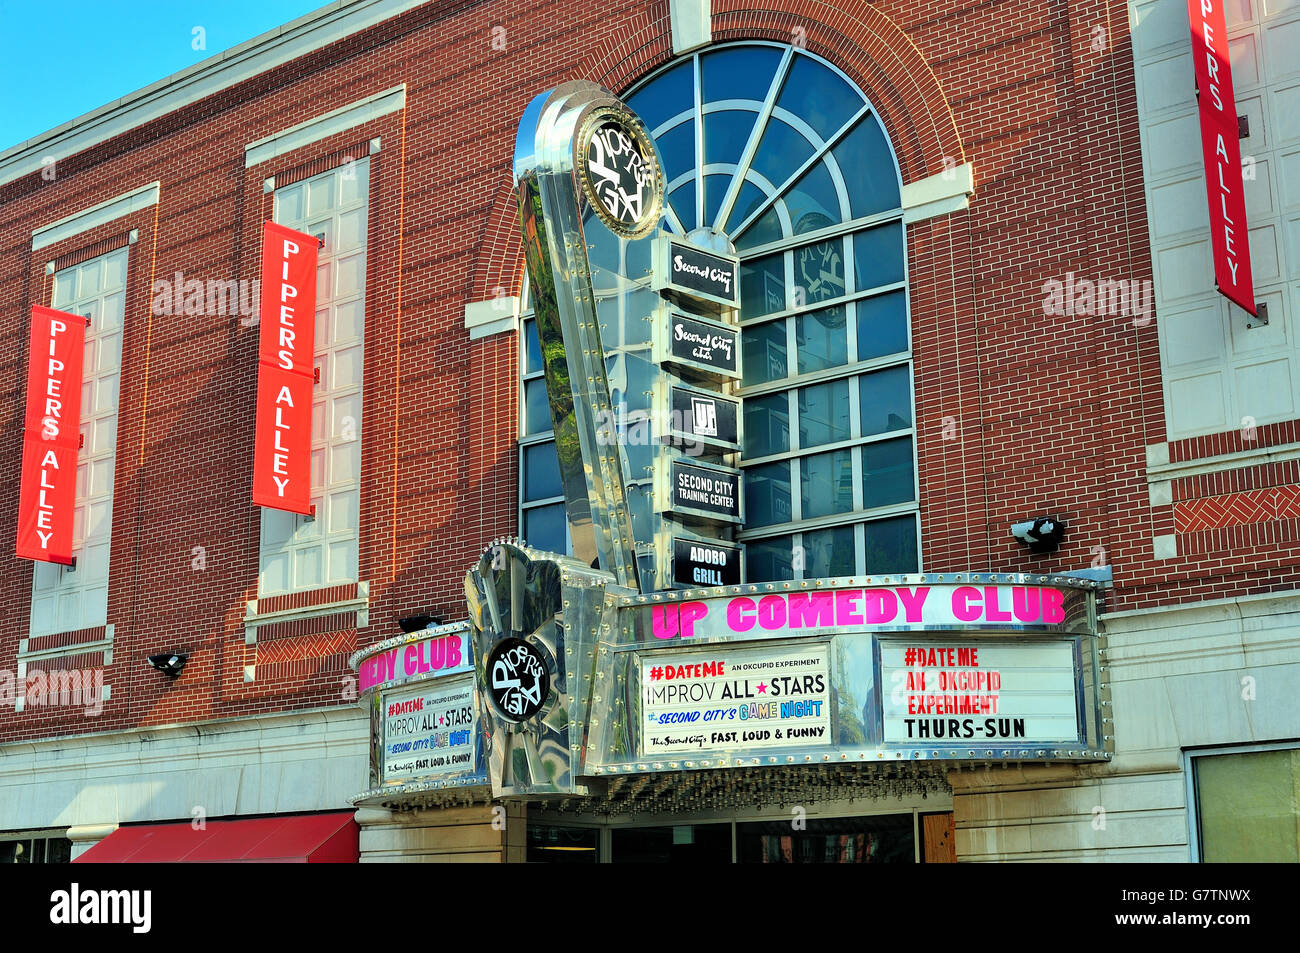 Seconda città del teatro, am improvvisative comedy club in Chicago la città vecchia. Chicago, Illinois, Stati Uniti d'America. Foto Stock